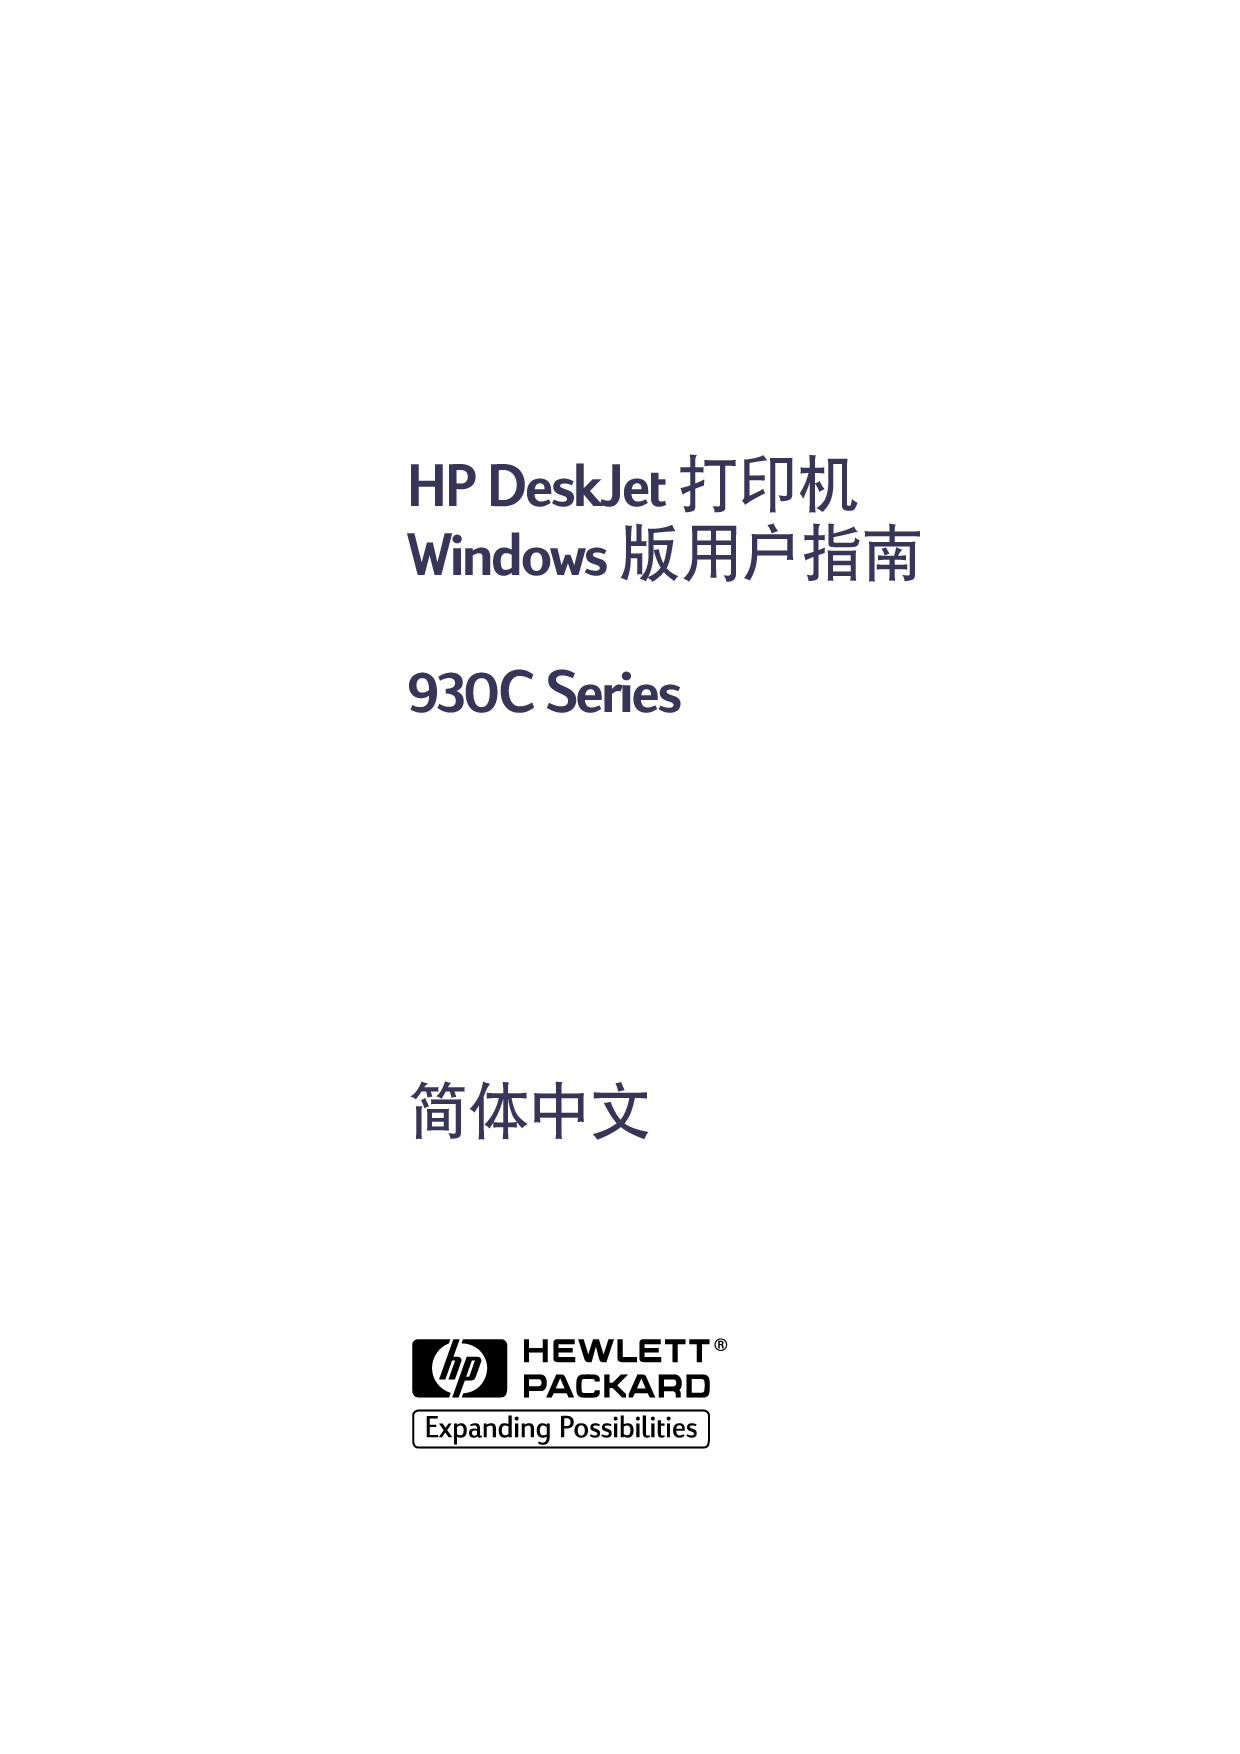 惠普 HP DeskJet 930C Windows 用户指南 封面